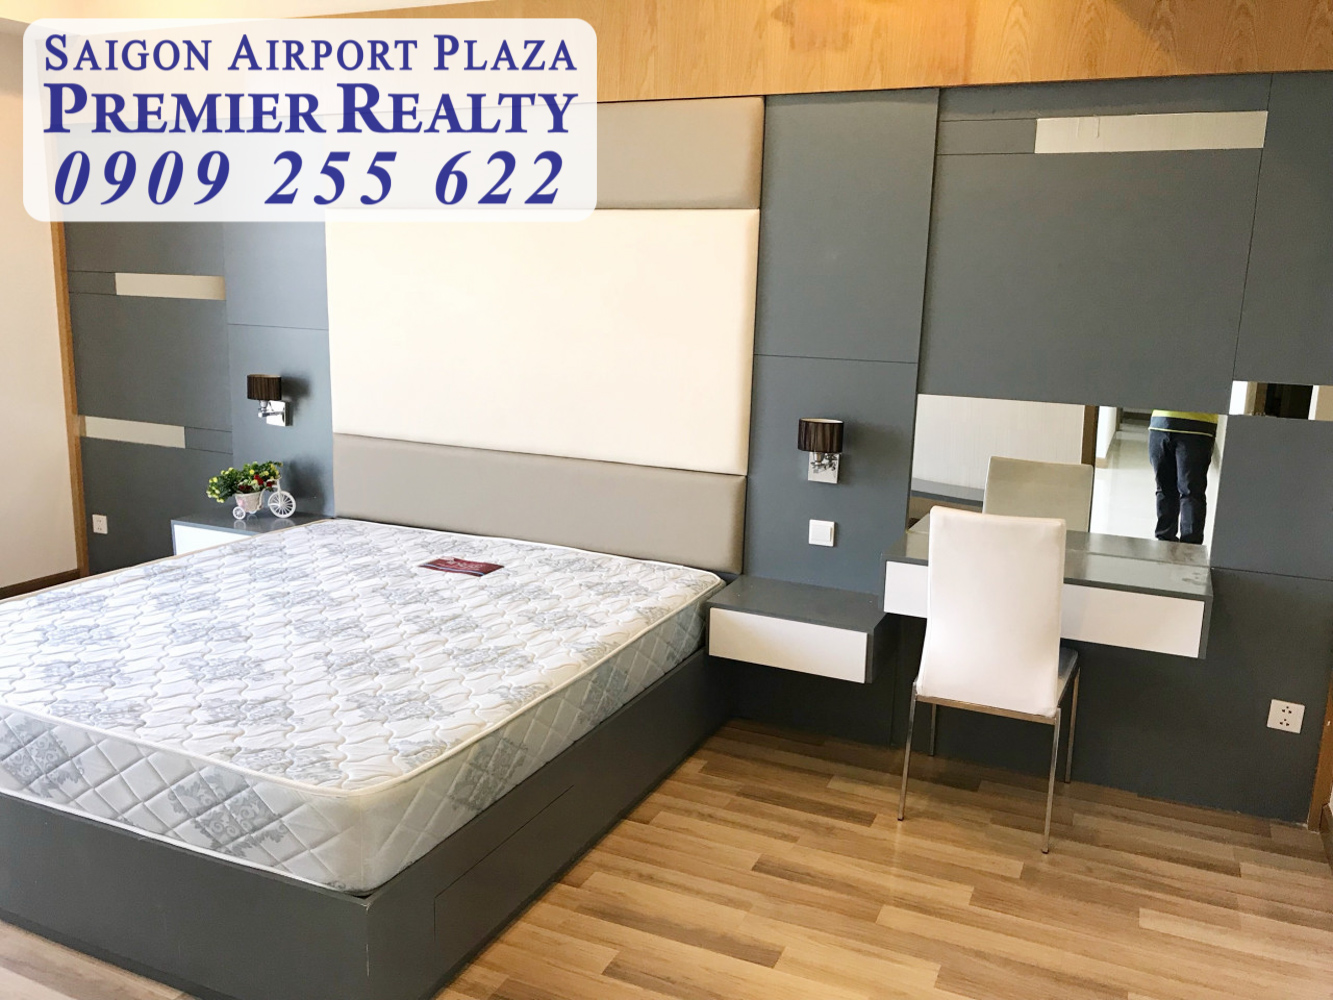 Cho thuê căn hộ chung cư SAIGON AIRPORT PLAZA 2PN diện tích 95m2 chỉ 18 triệu ~772 USD full nội thất đầy đủ cao cấp. Liên hệ hotline PKD: 0909 255 622